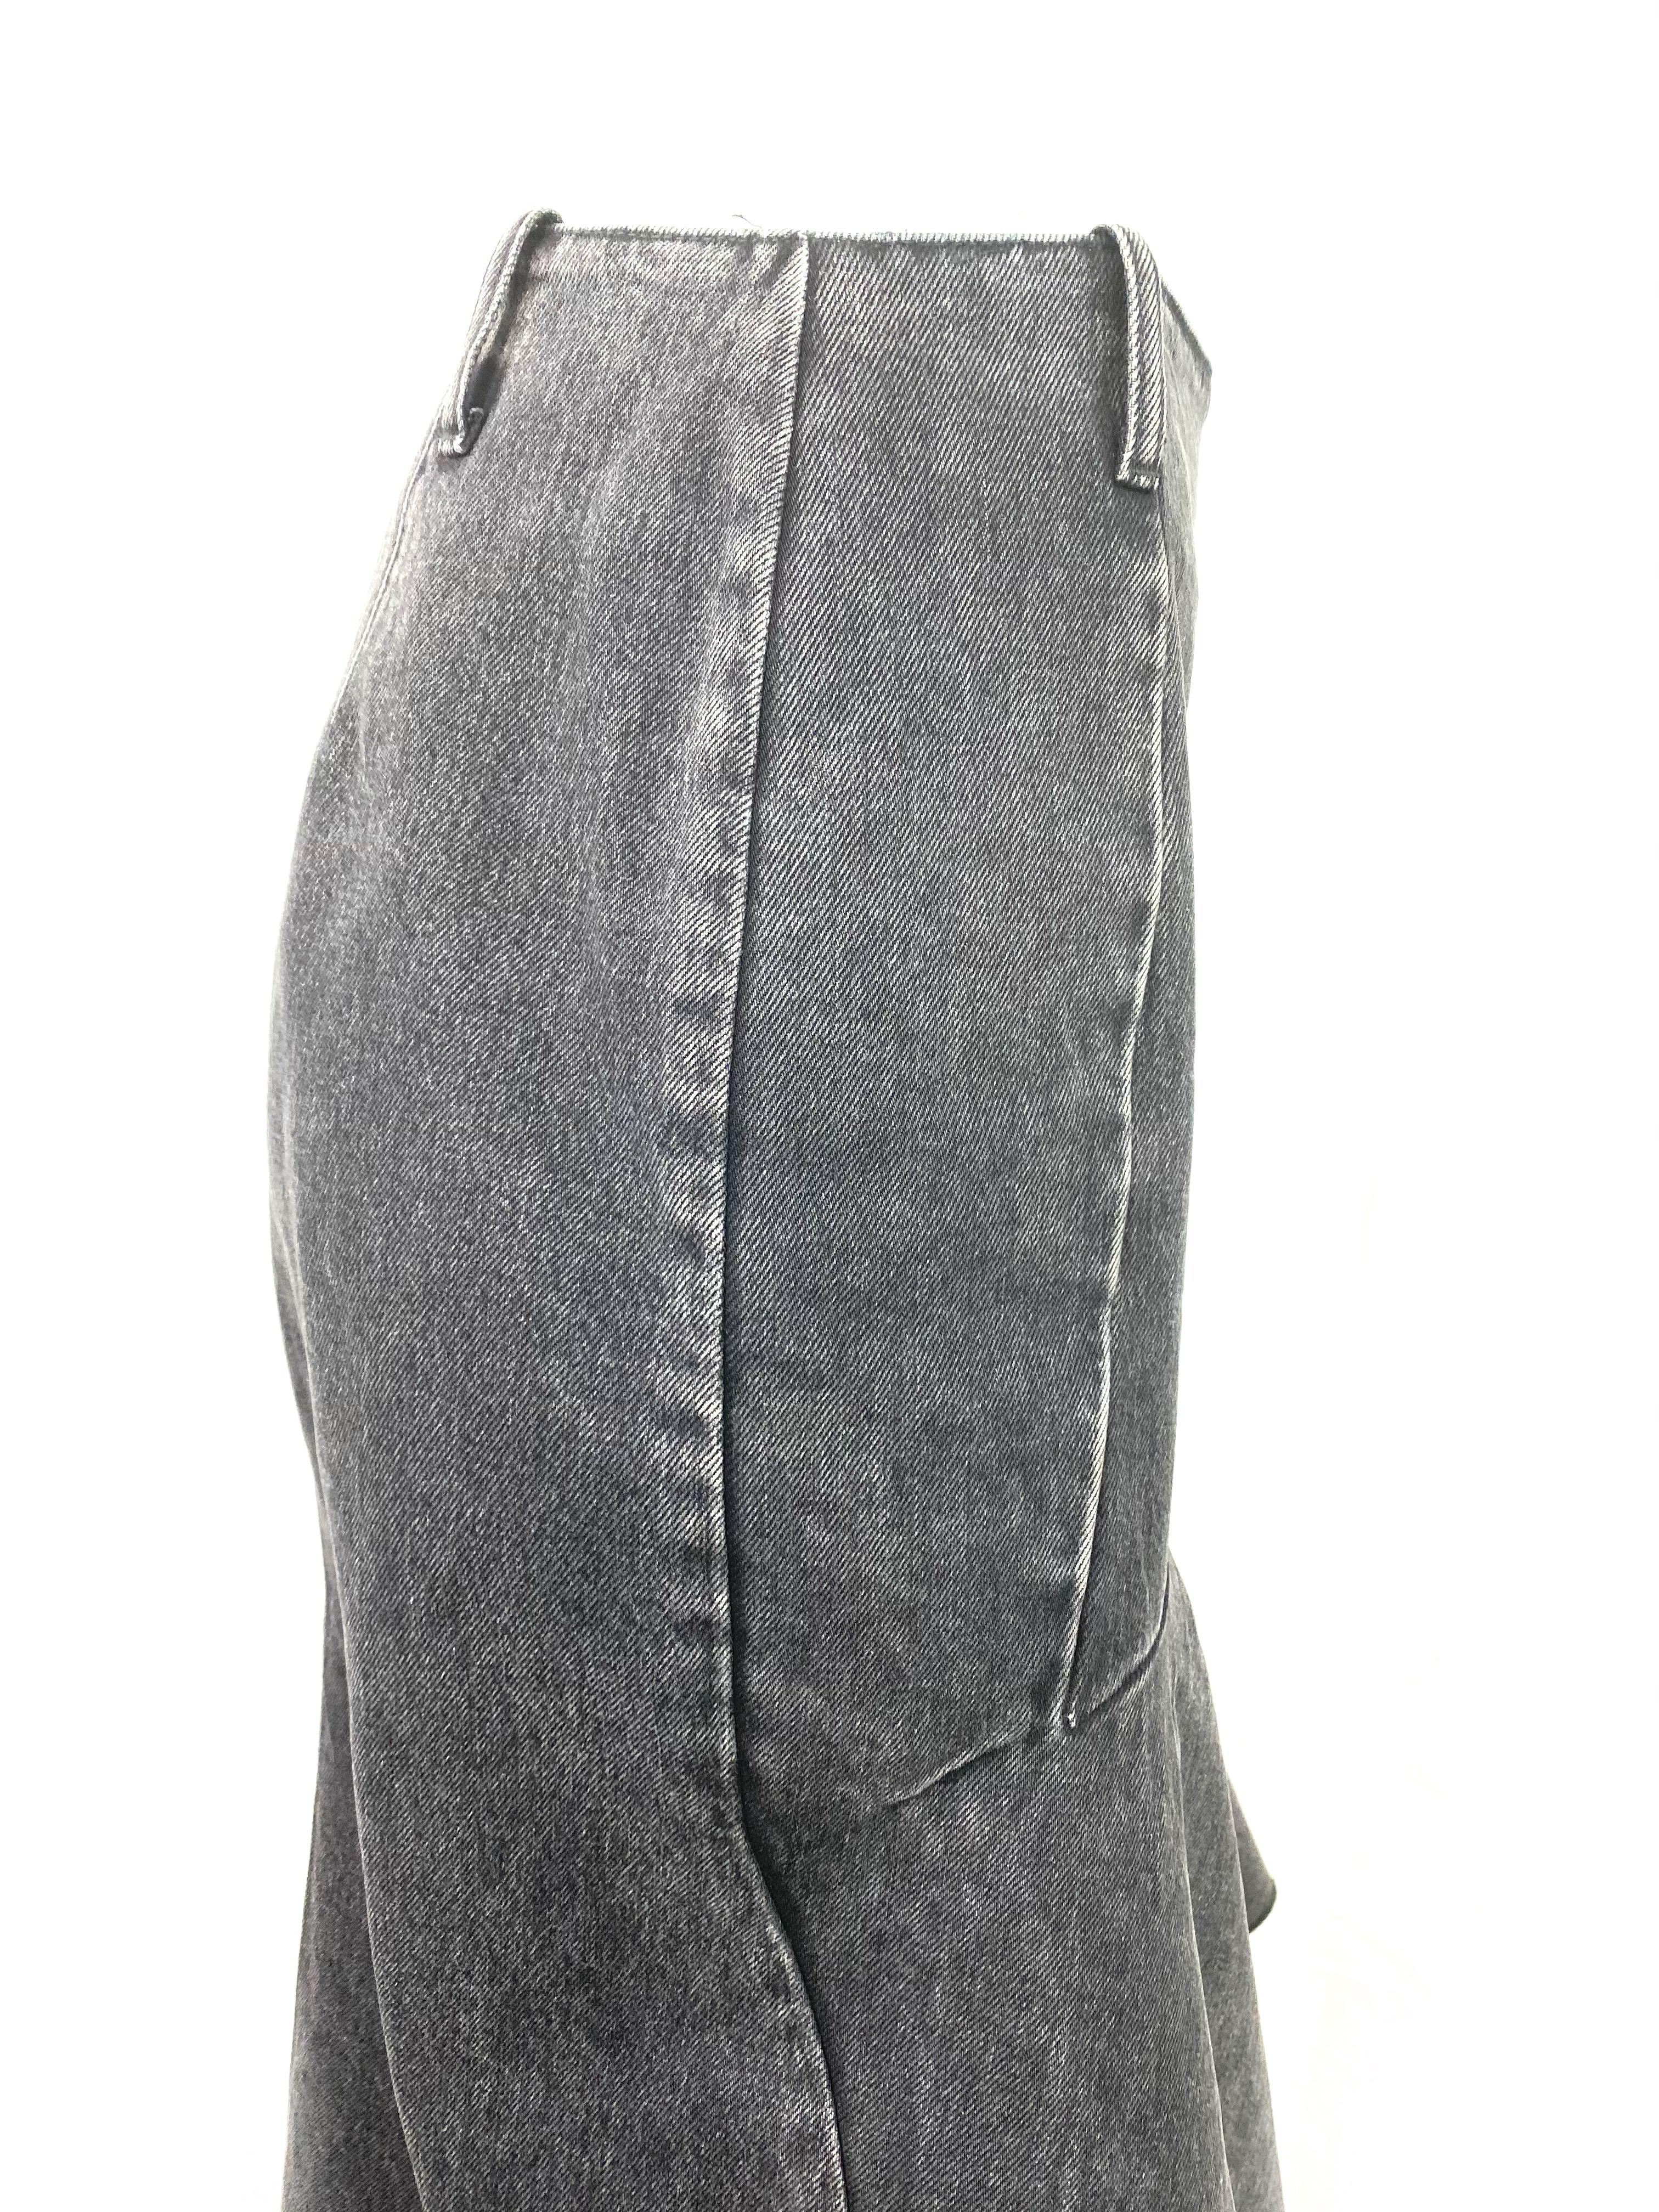 Gray Balenciaga Denim Flare Skirt, Size 42